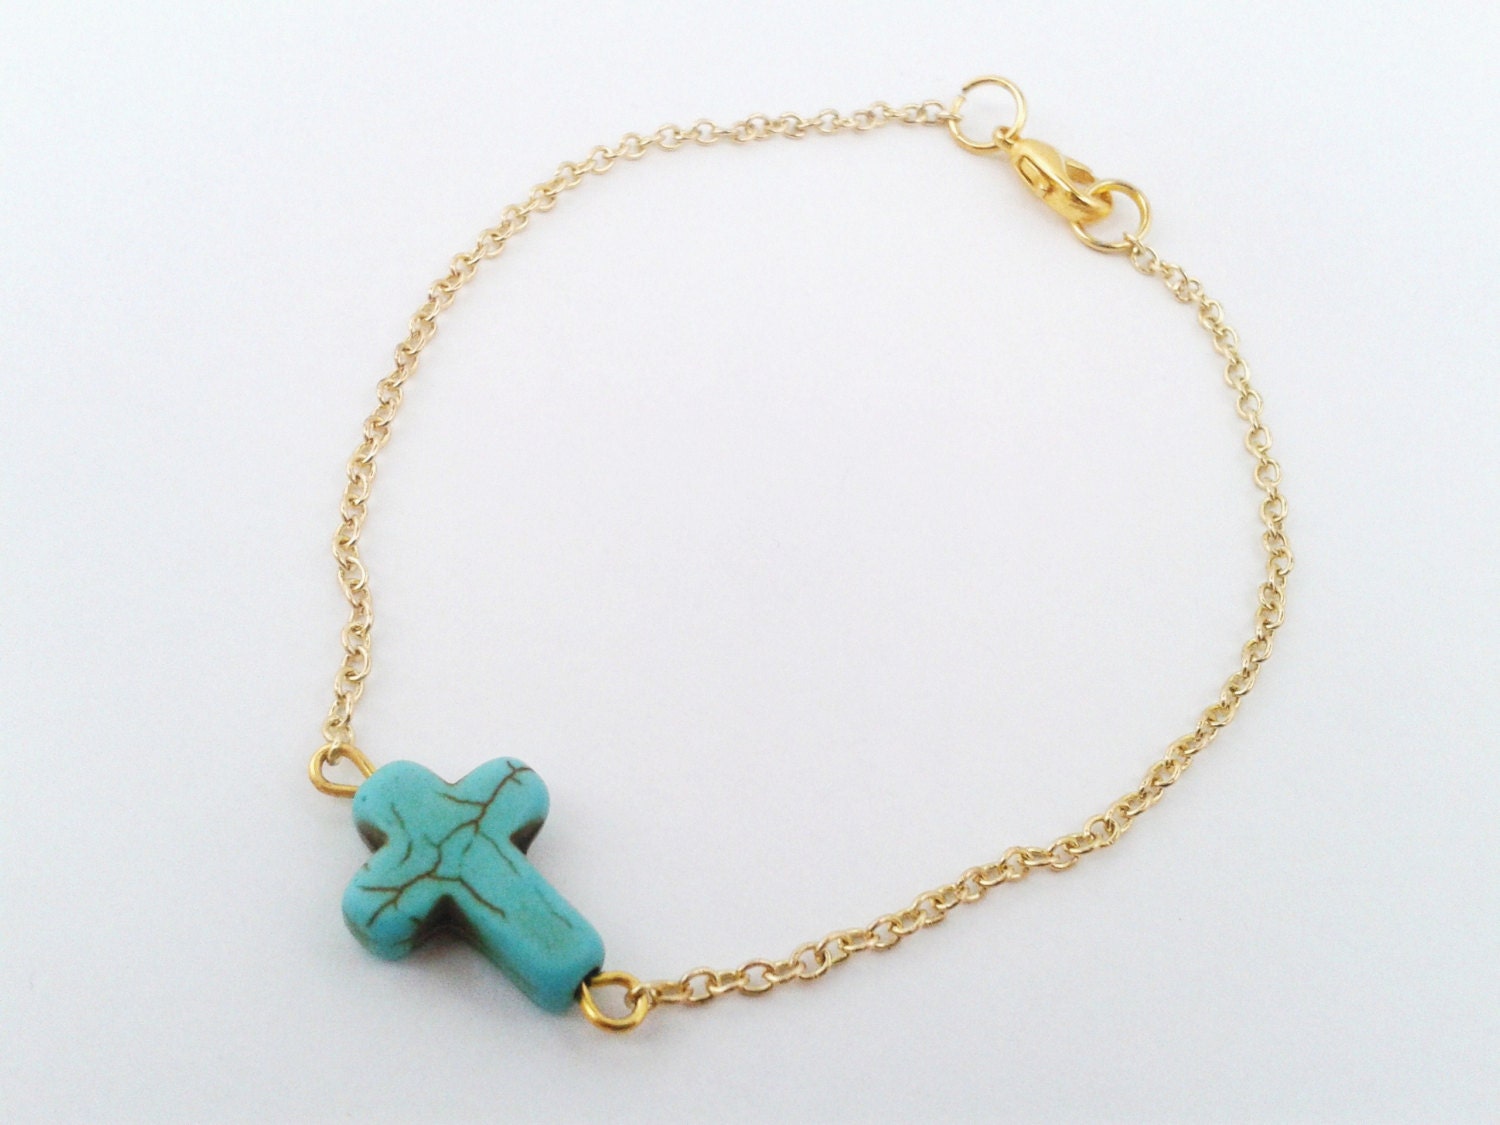 Turquoise cross ankle golden chain cross foot bracelet | Etsy